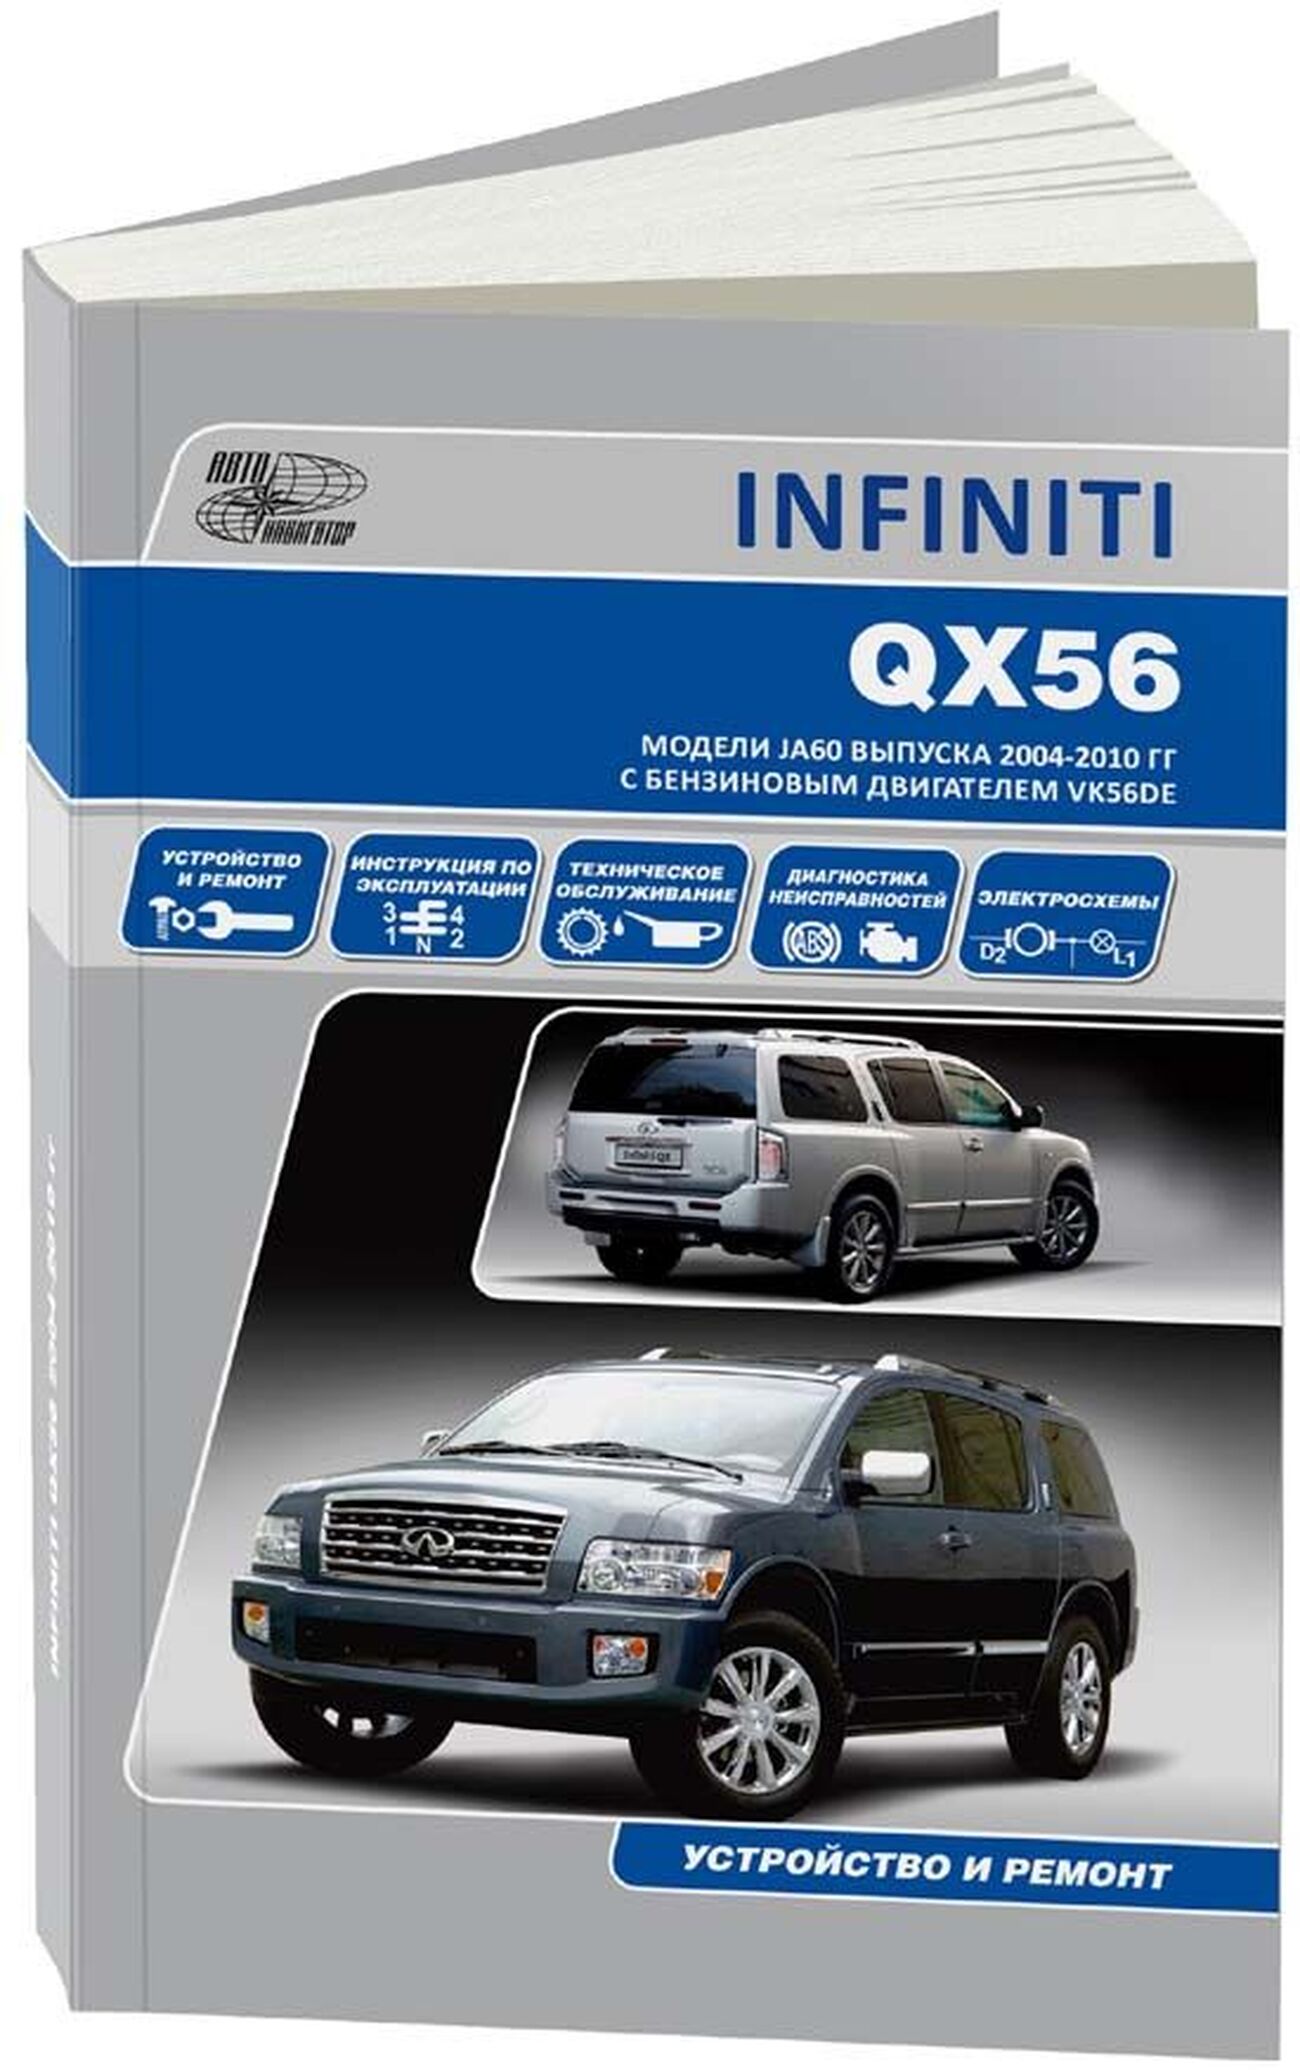 Книга: INFINITI QX56 (б) с 2004 г.в., рем., экспл., то | Автонавигатор